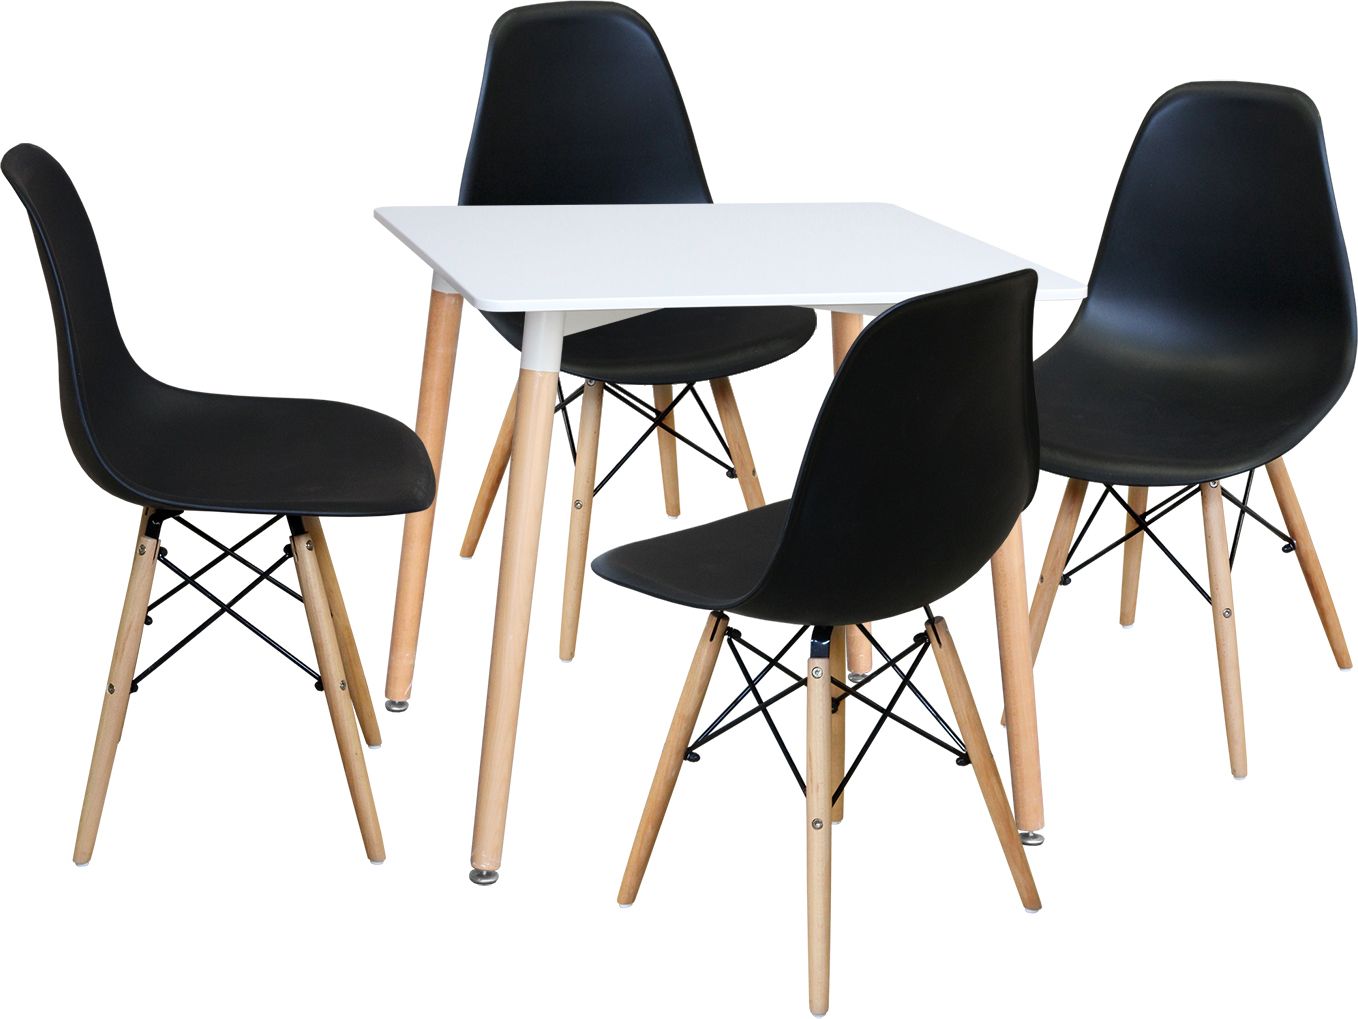 Jídelní stůl 80x80 UNO bílý + 4 židle UNO černé Mdum - M DUM.cz